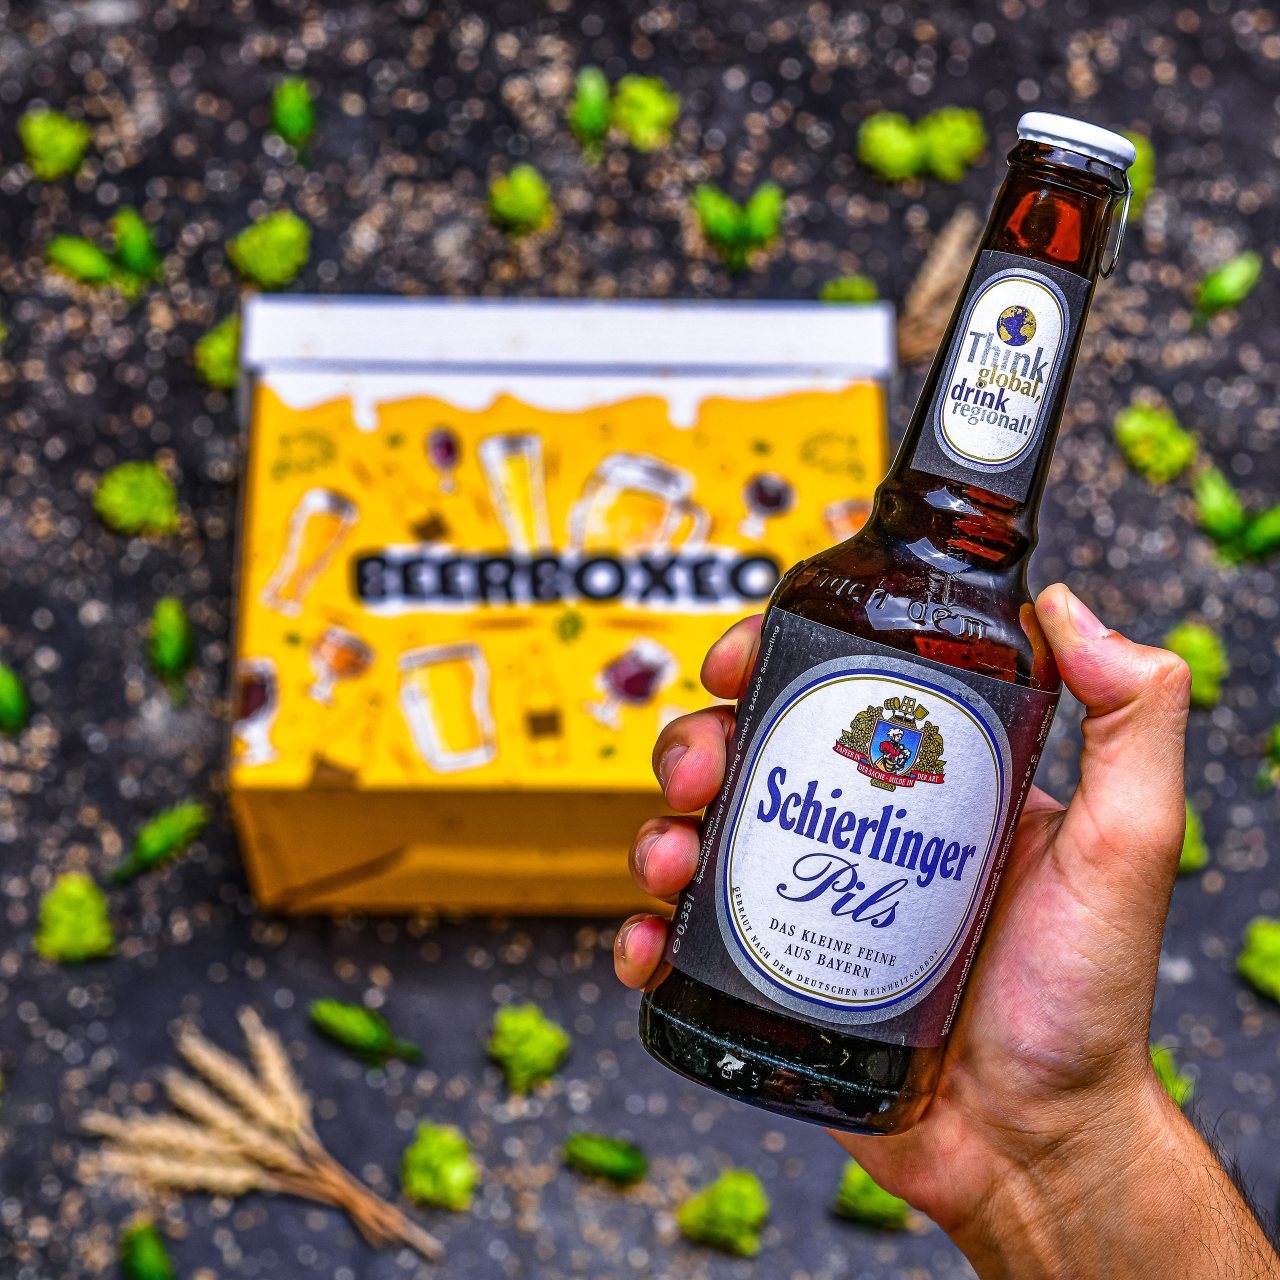 BeerBOXEO plné pivních speciálů vol.2